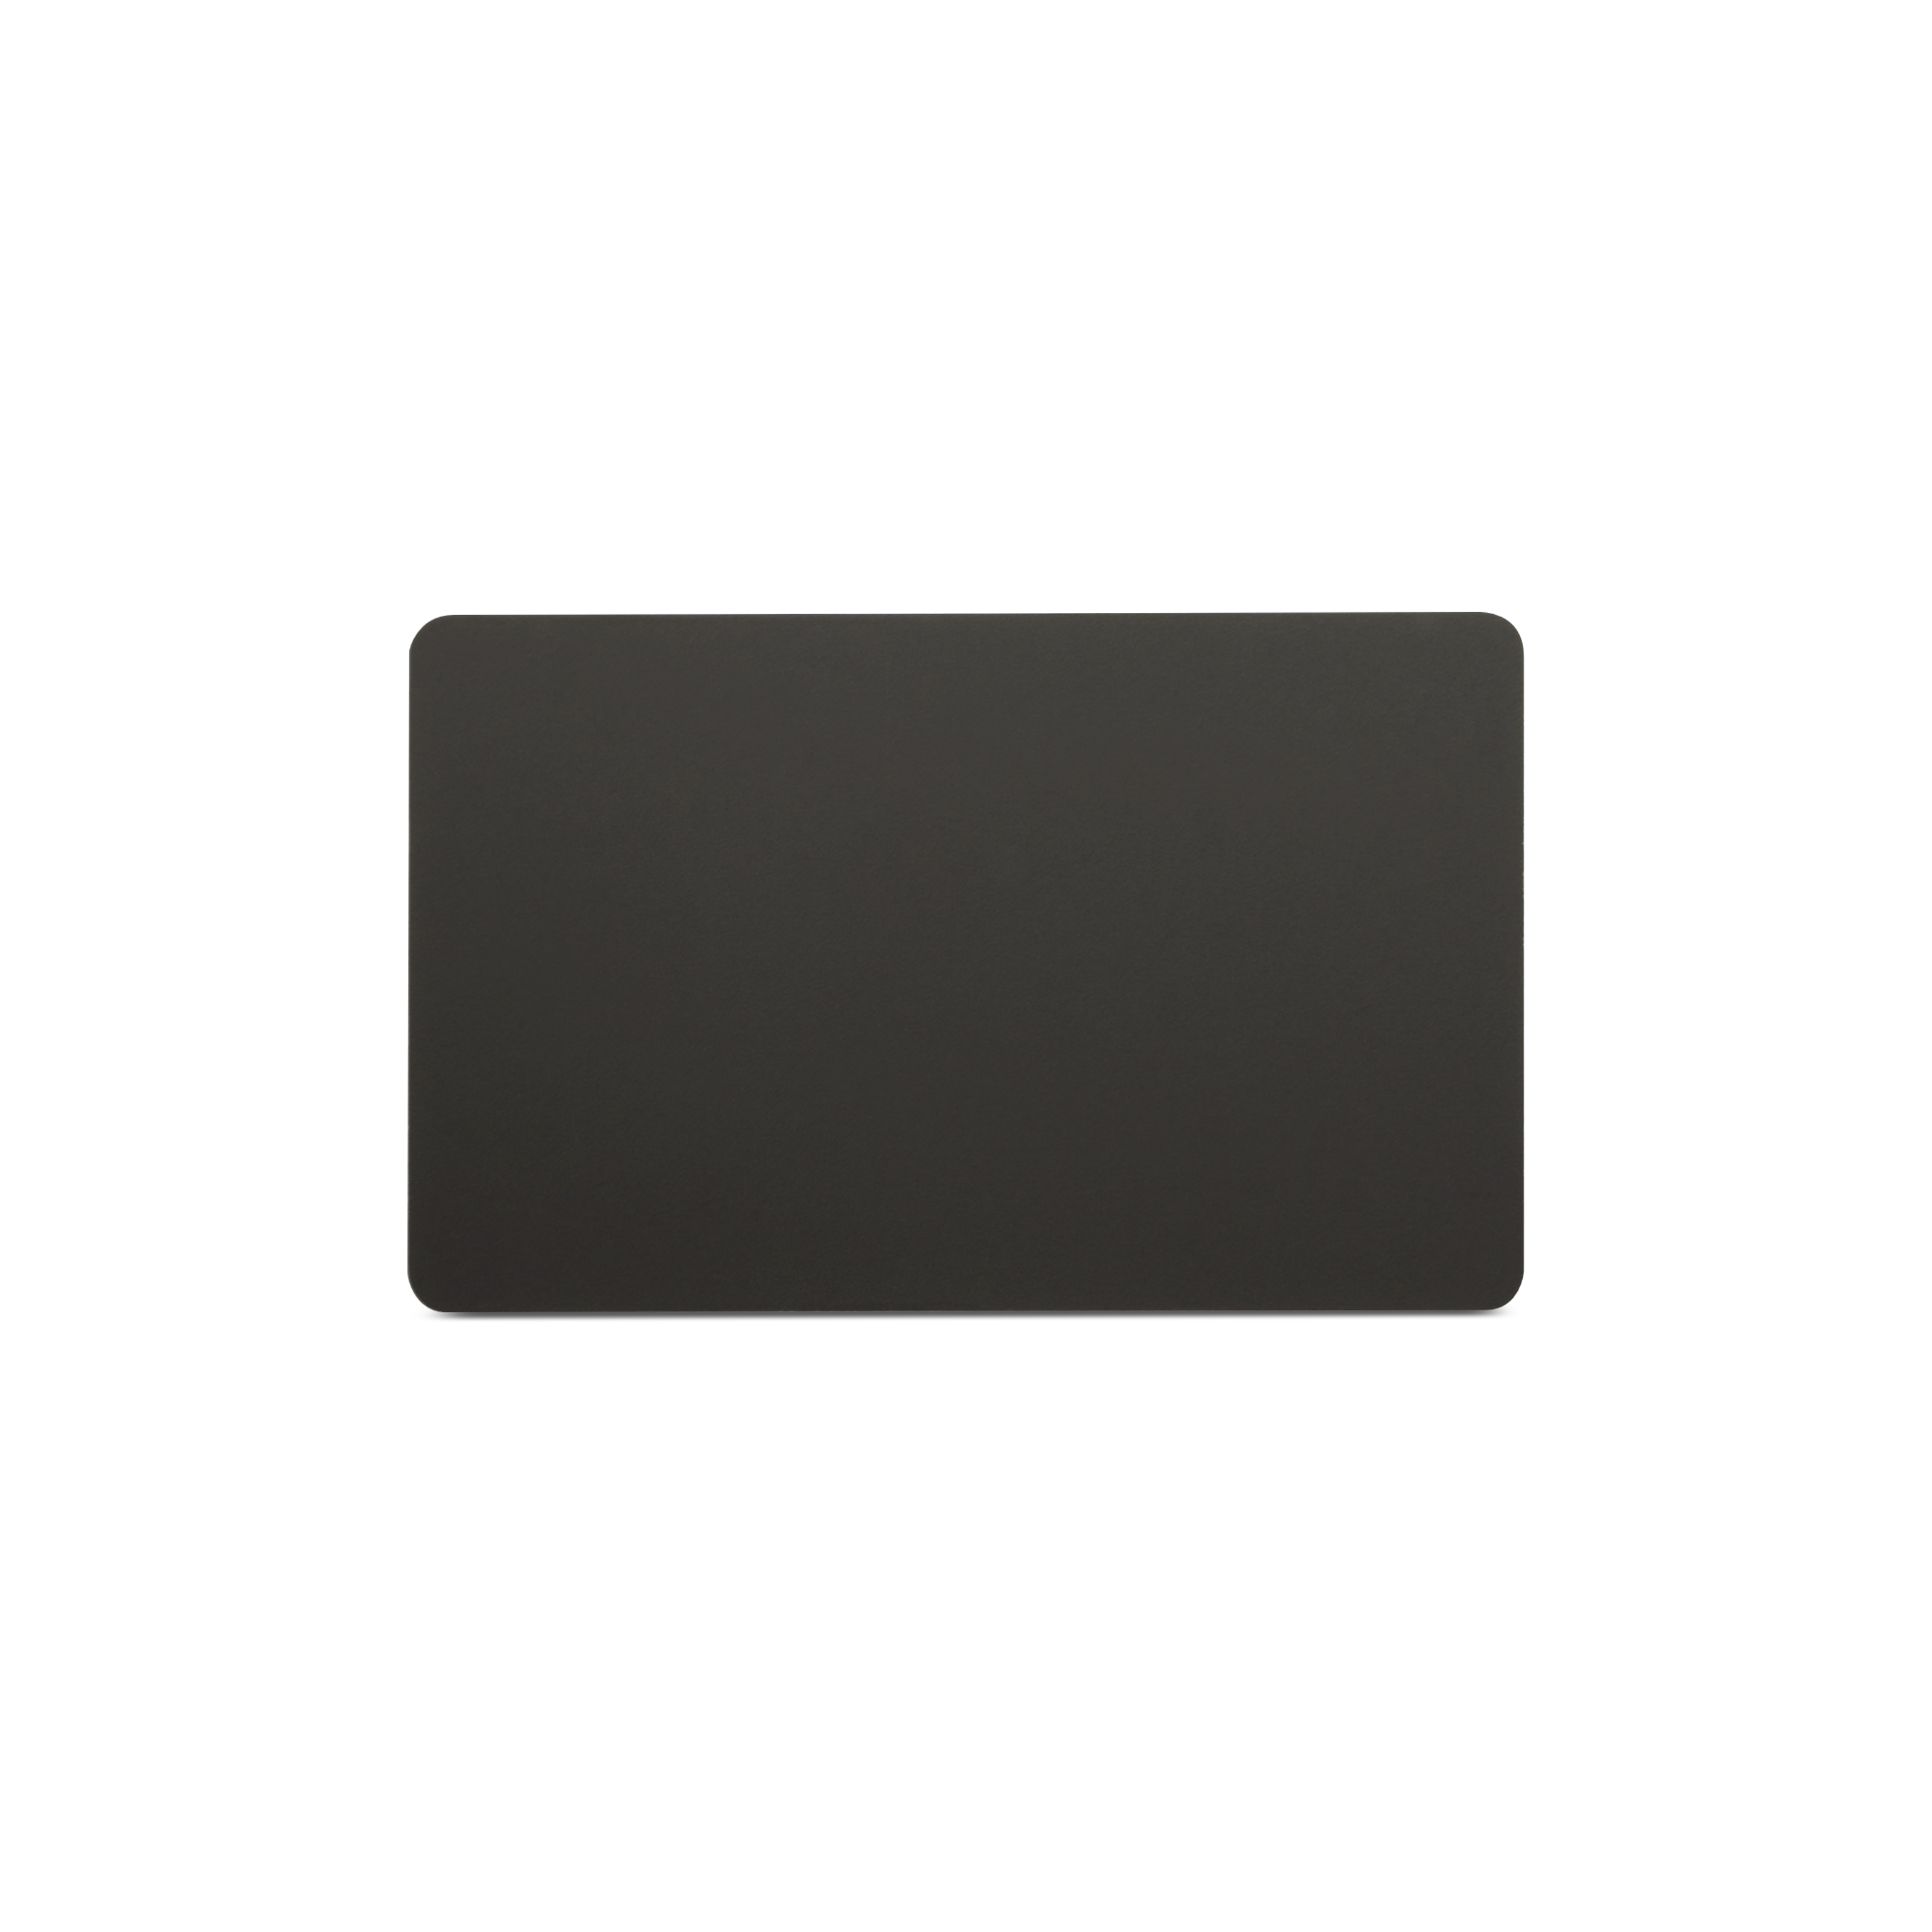 Rückseite NFC Schutzkarte in schwarz im ISO-Format